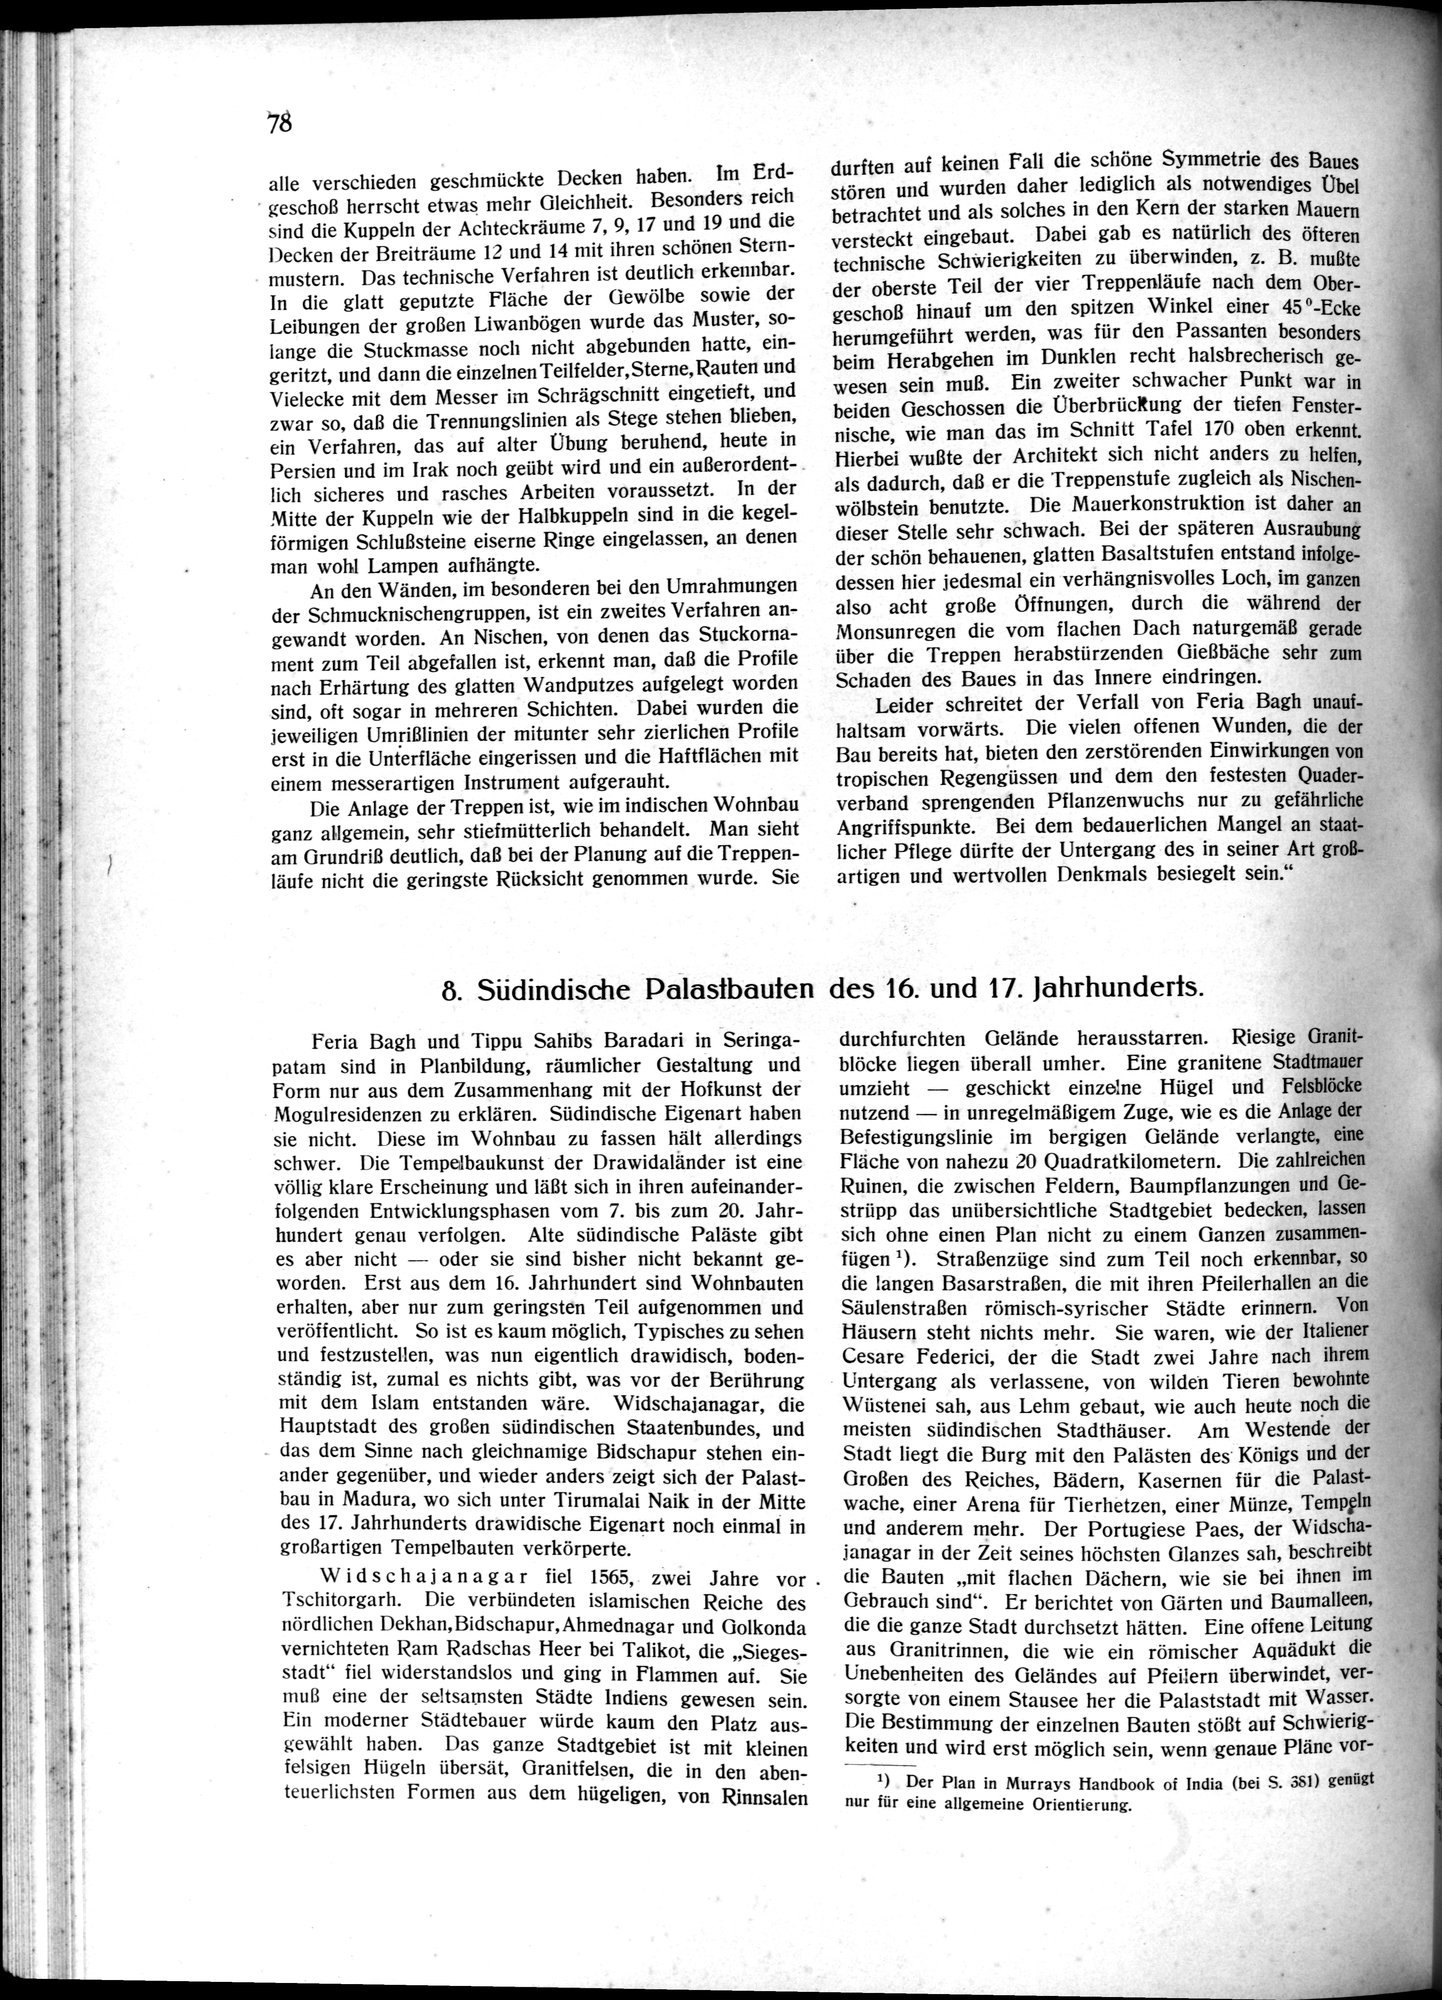 Indische Palaste und Wohnhauser : vol.1 / Page 88 (Grayscale High Resolution Image)